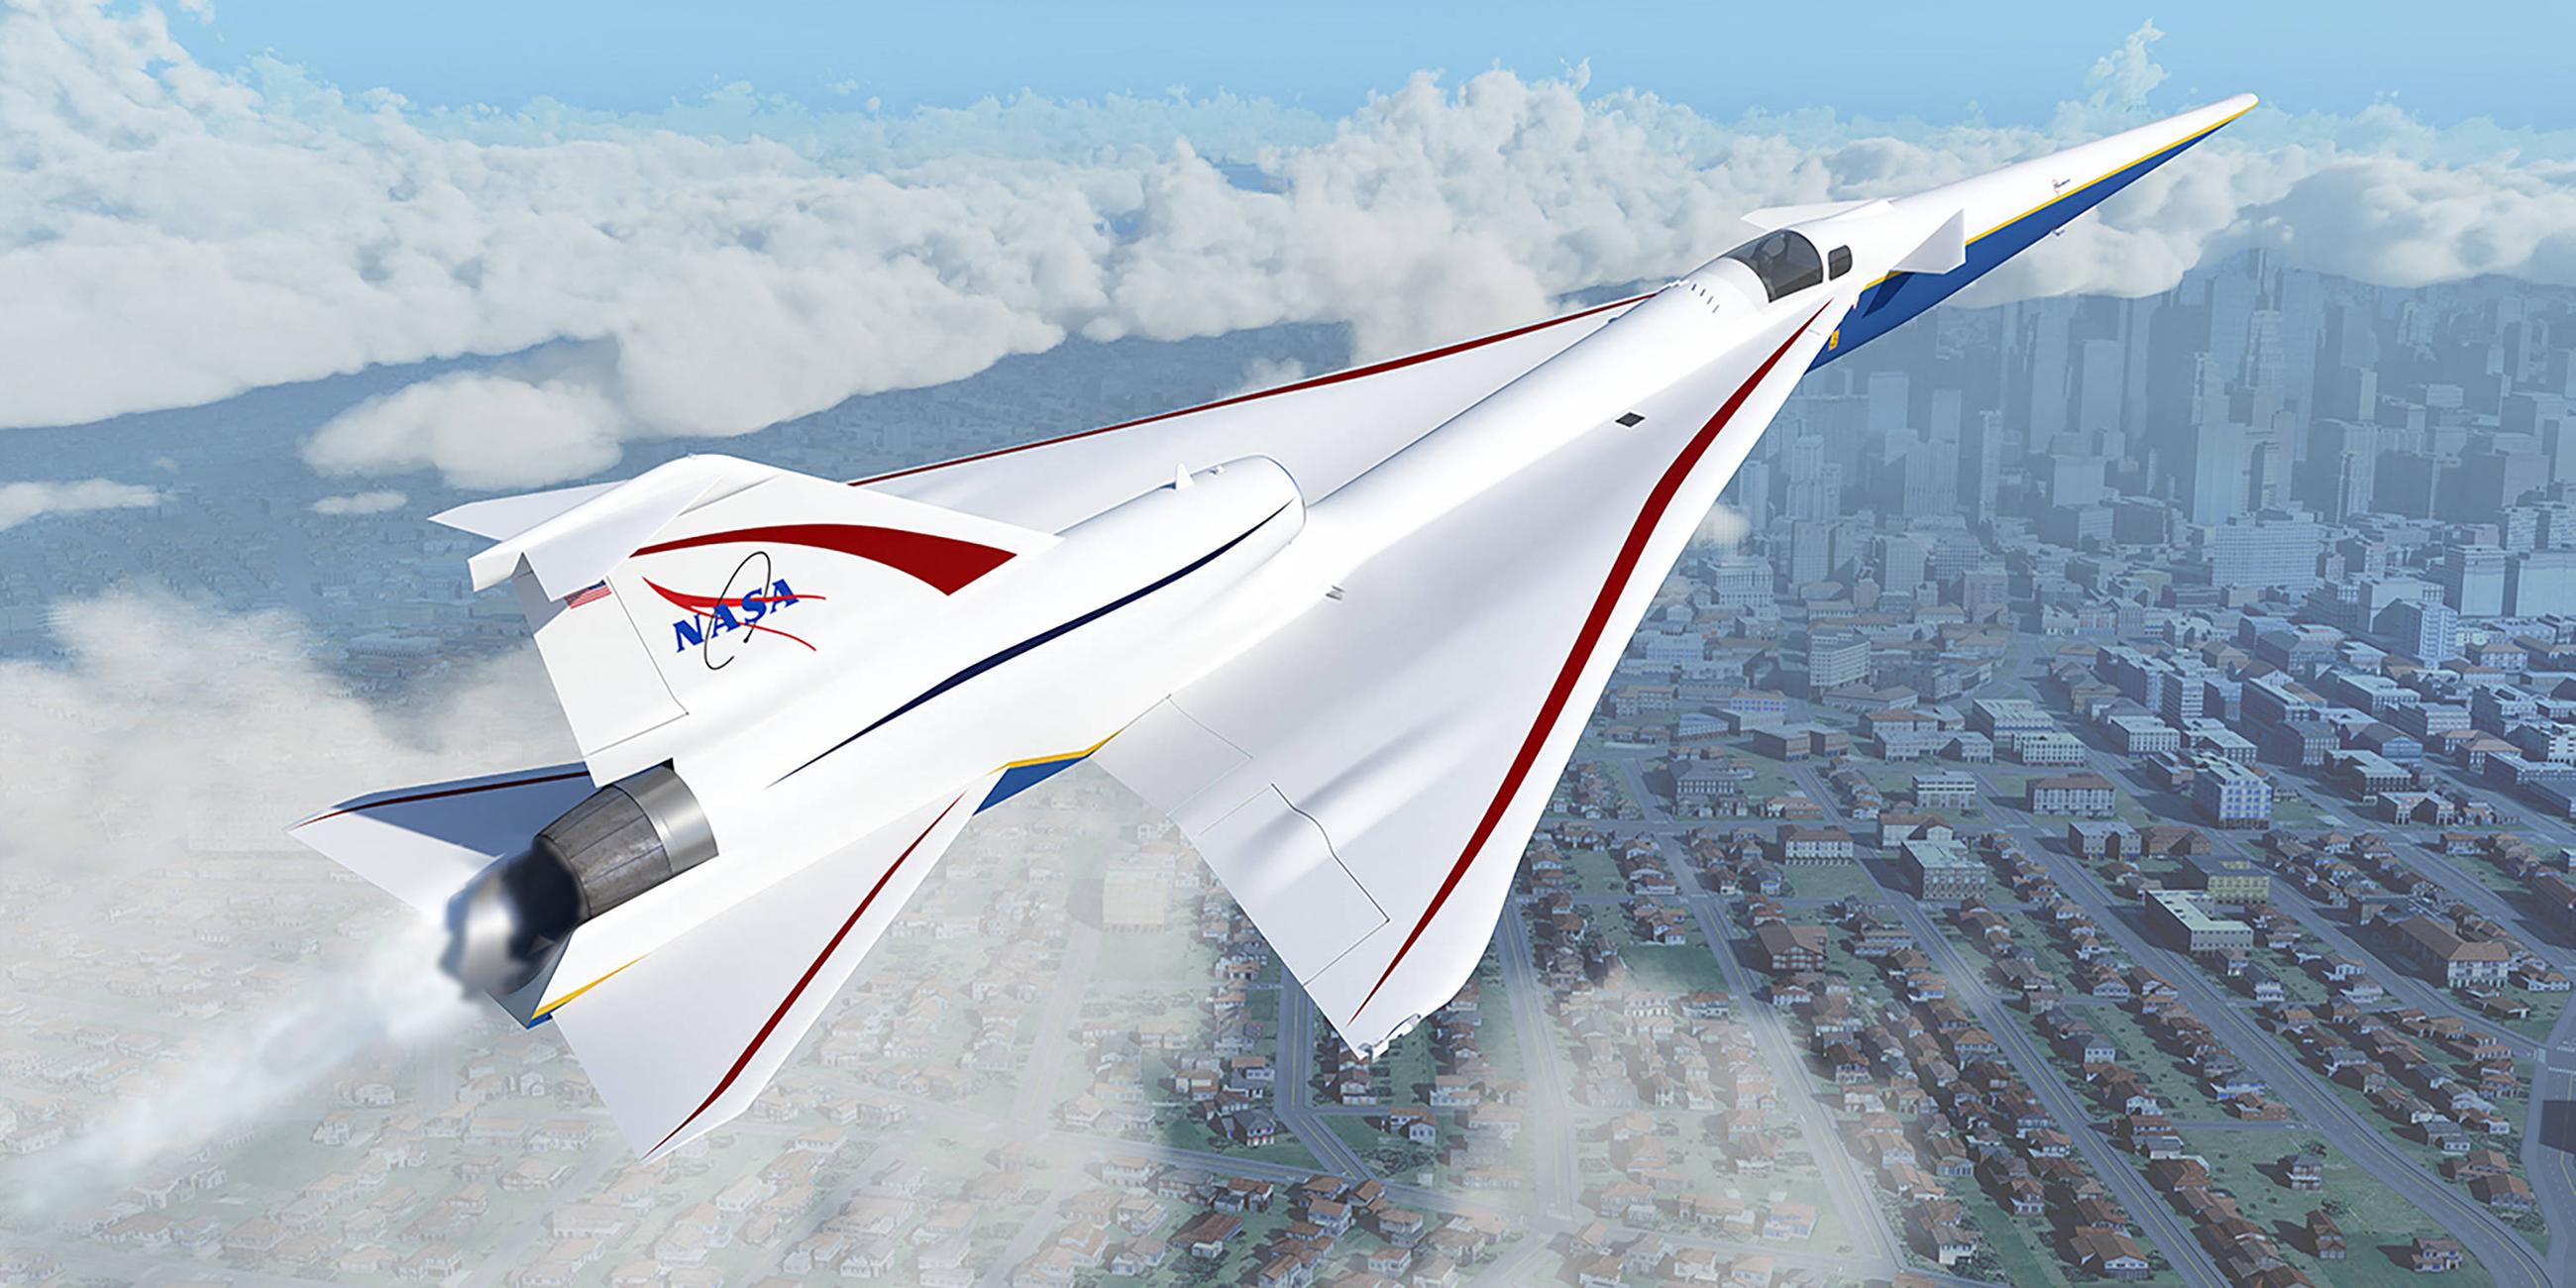 Das Nasa-Flugzeug X-59 ist so konzipiert, dass es schneller als die Schallgeschwindigkeit fliegt, ohne einen lauten, störenden Schallknall zu erzeugen.